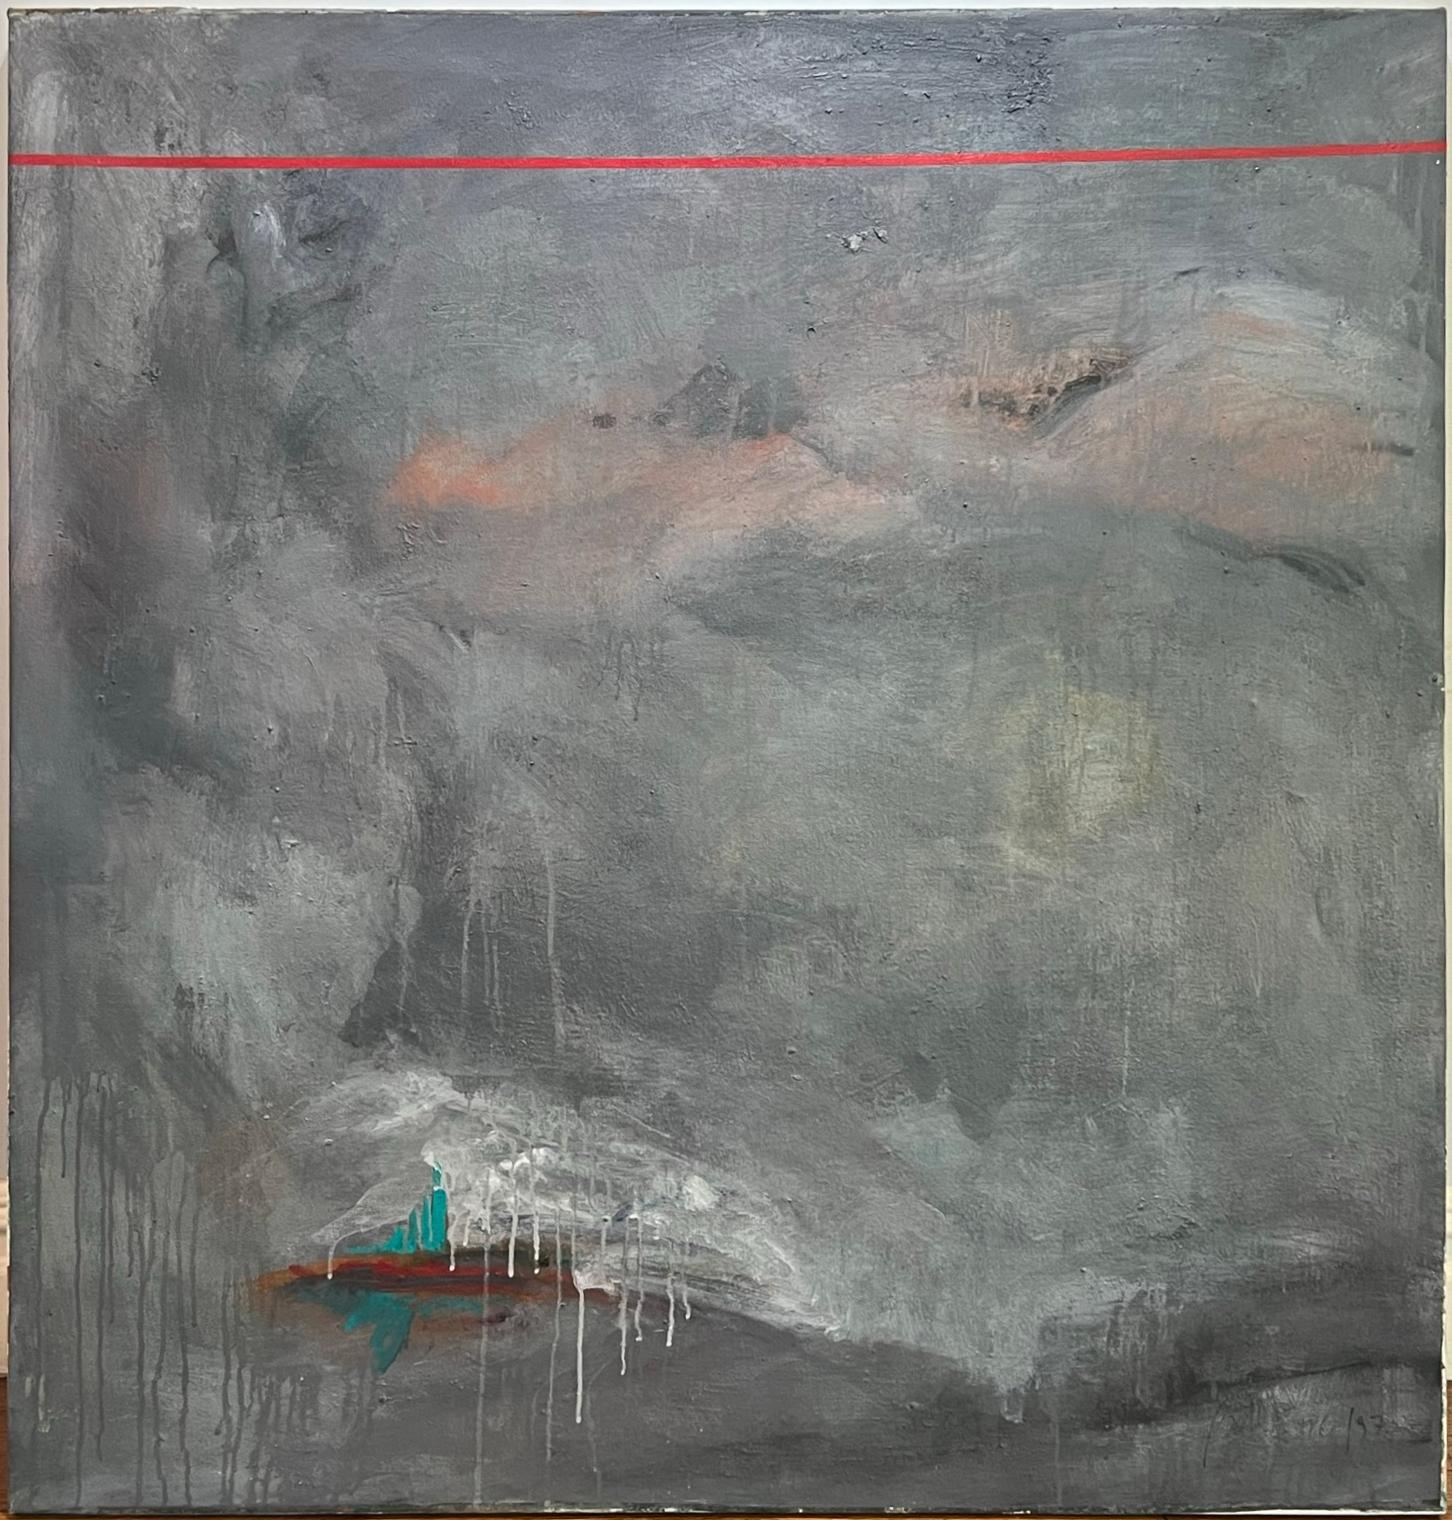 Wir haben ein großes zeitgenössisches abstraktes Gemälde von Daniel Bottero, einem lateinamerikanischen Künstler, zu verkaufen. Es zeigt einen dunklen Hintergrund, ein rotes Band, das horizontal über die Oberseite des Gemäldes verläuft, und